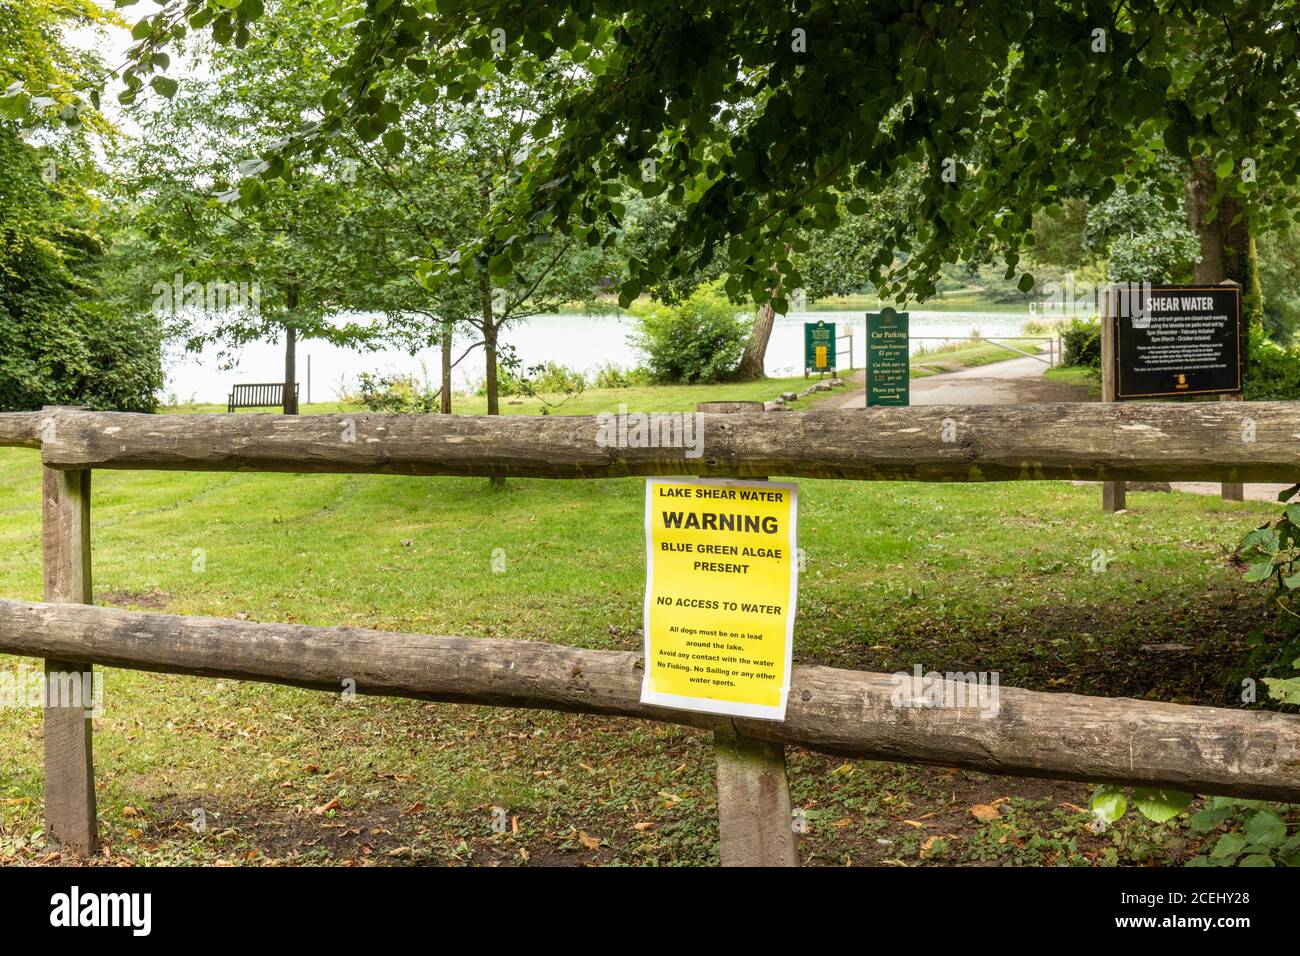 Le lac à Shearwater avis d'avertissement concernant les algues bleues qui sont présentes dans l'eau et un danger. Longleat Estate, Wiltshire, Angleterre, Royaume-Uni Banque D'Images